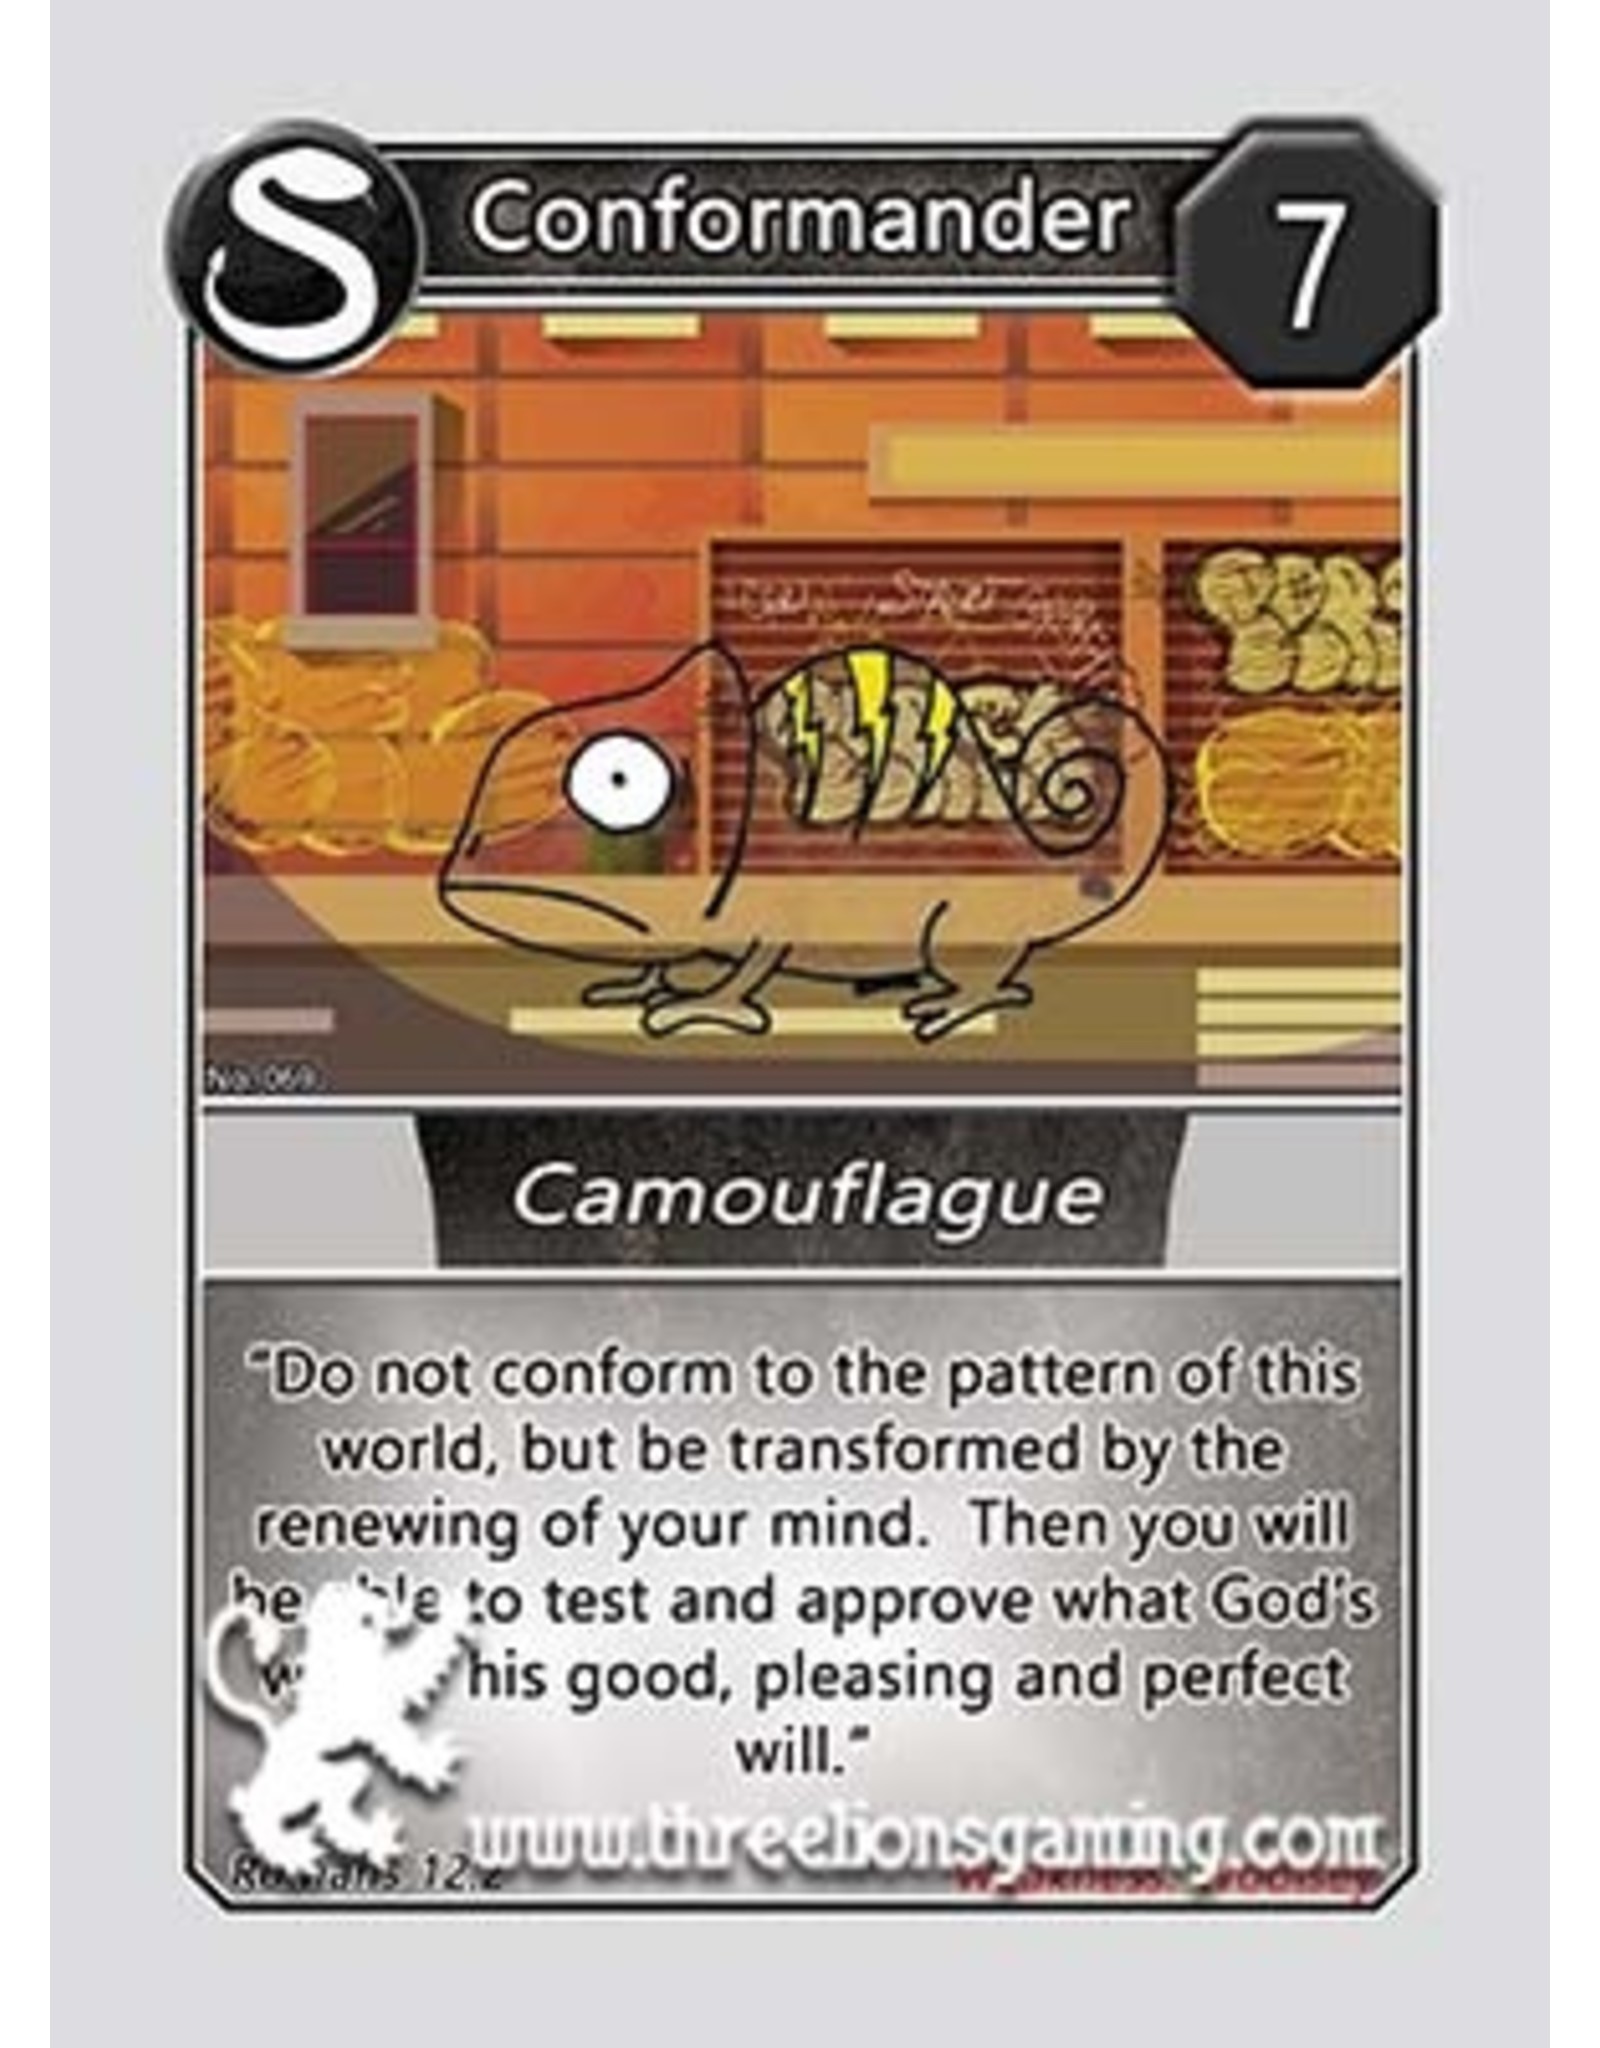 S1: Conformander